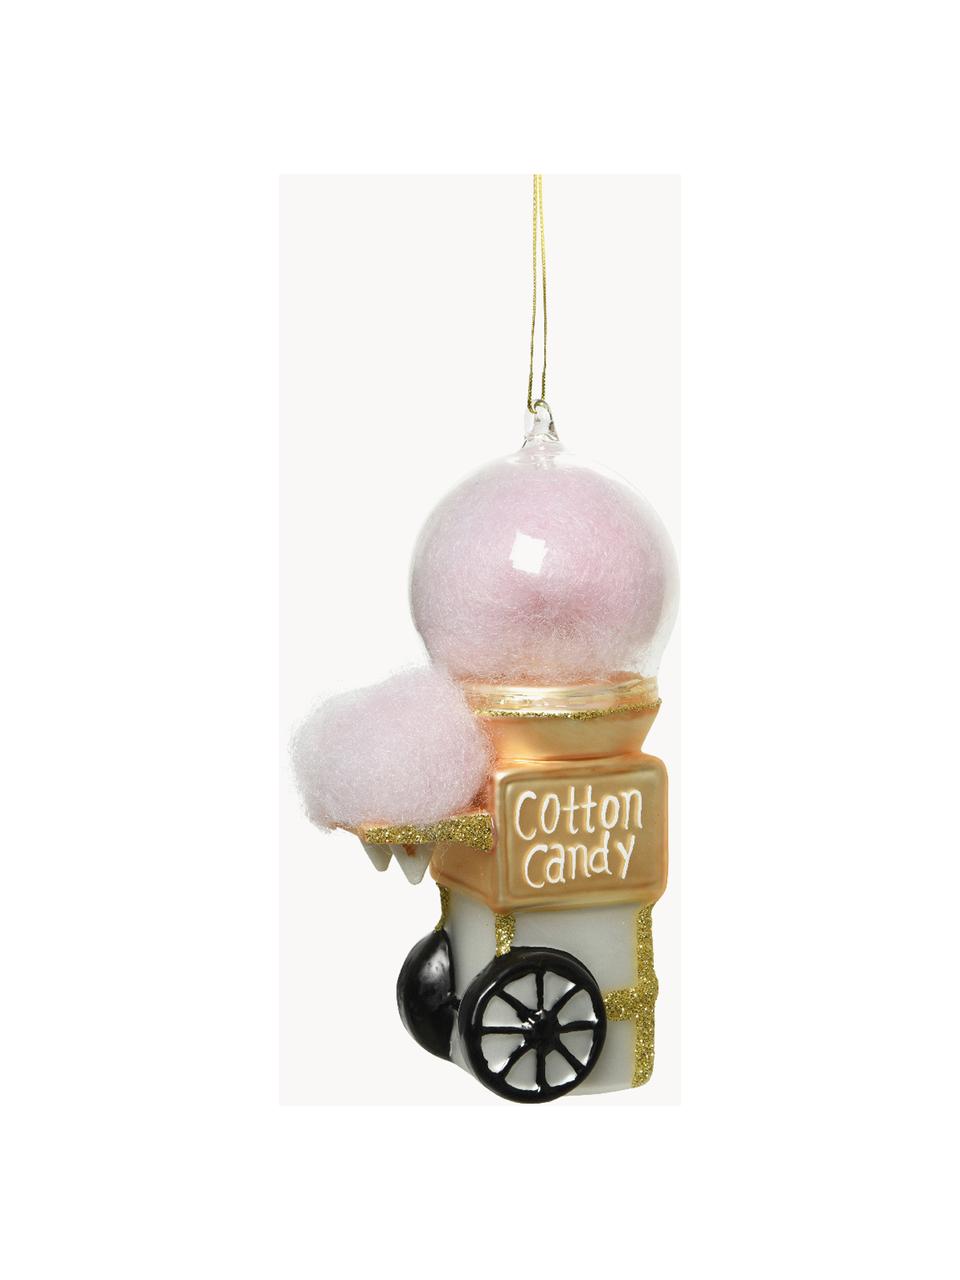 Adornos navideños Cotton Candy, 2 uds., Vidrio, Rosa, dorado, An 8 x Al 14 cm